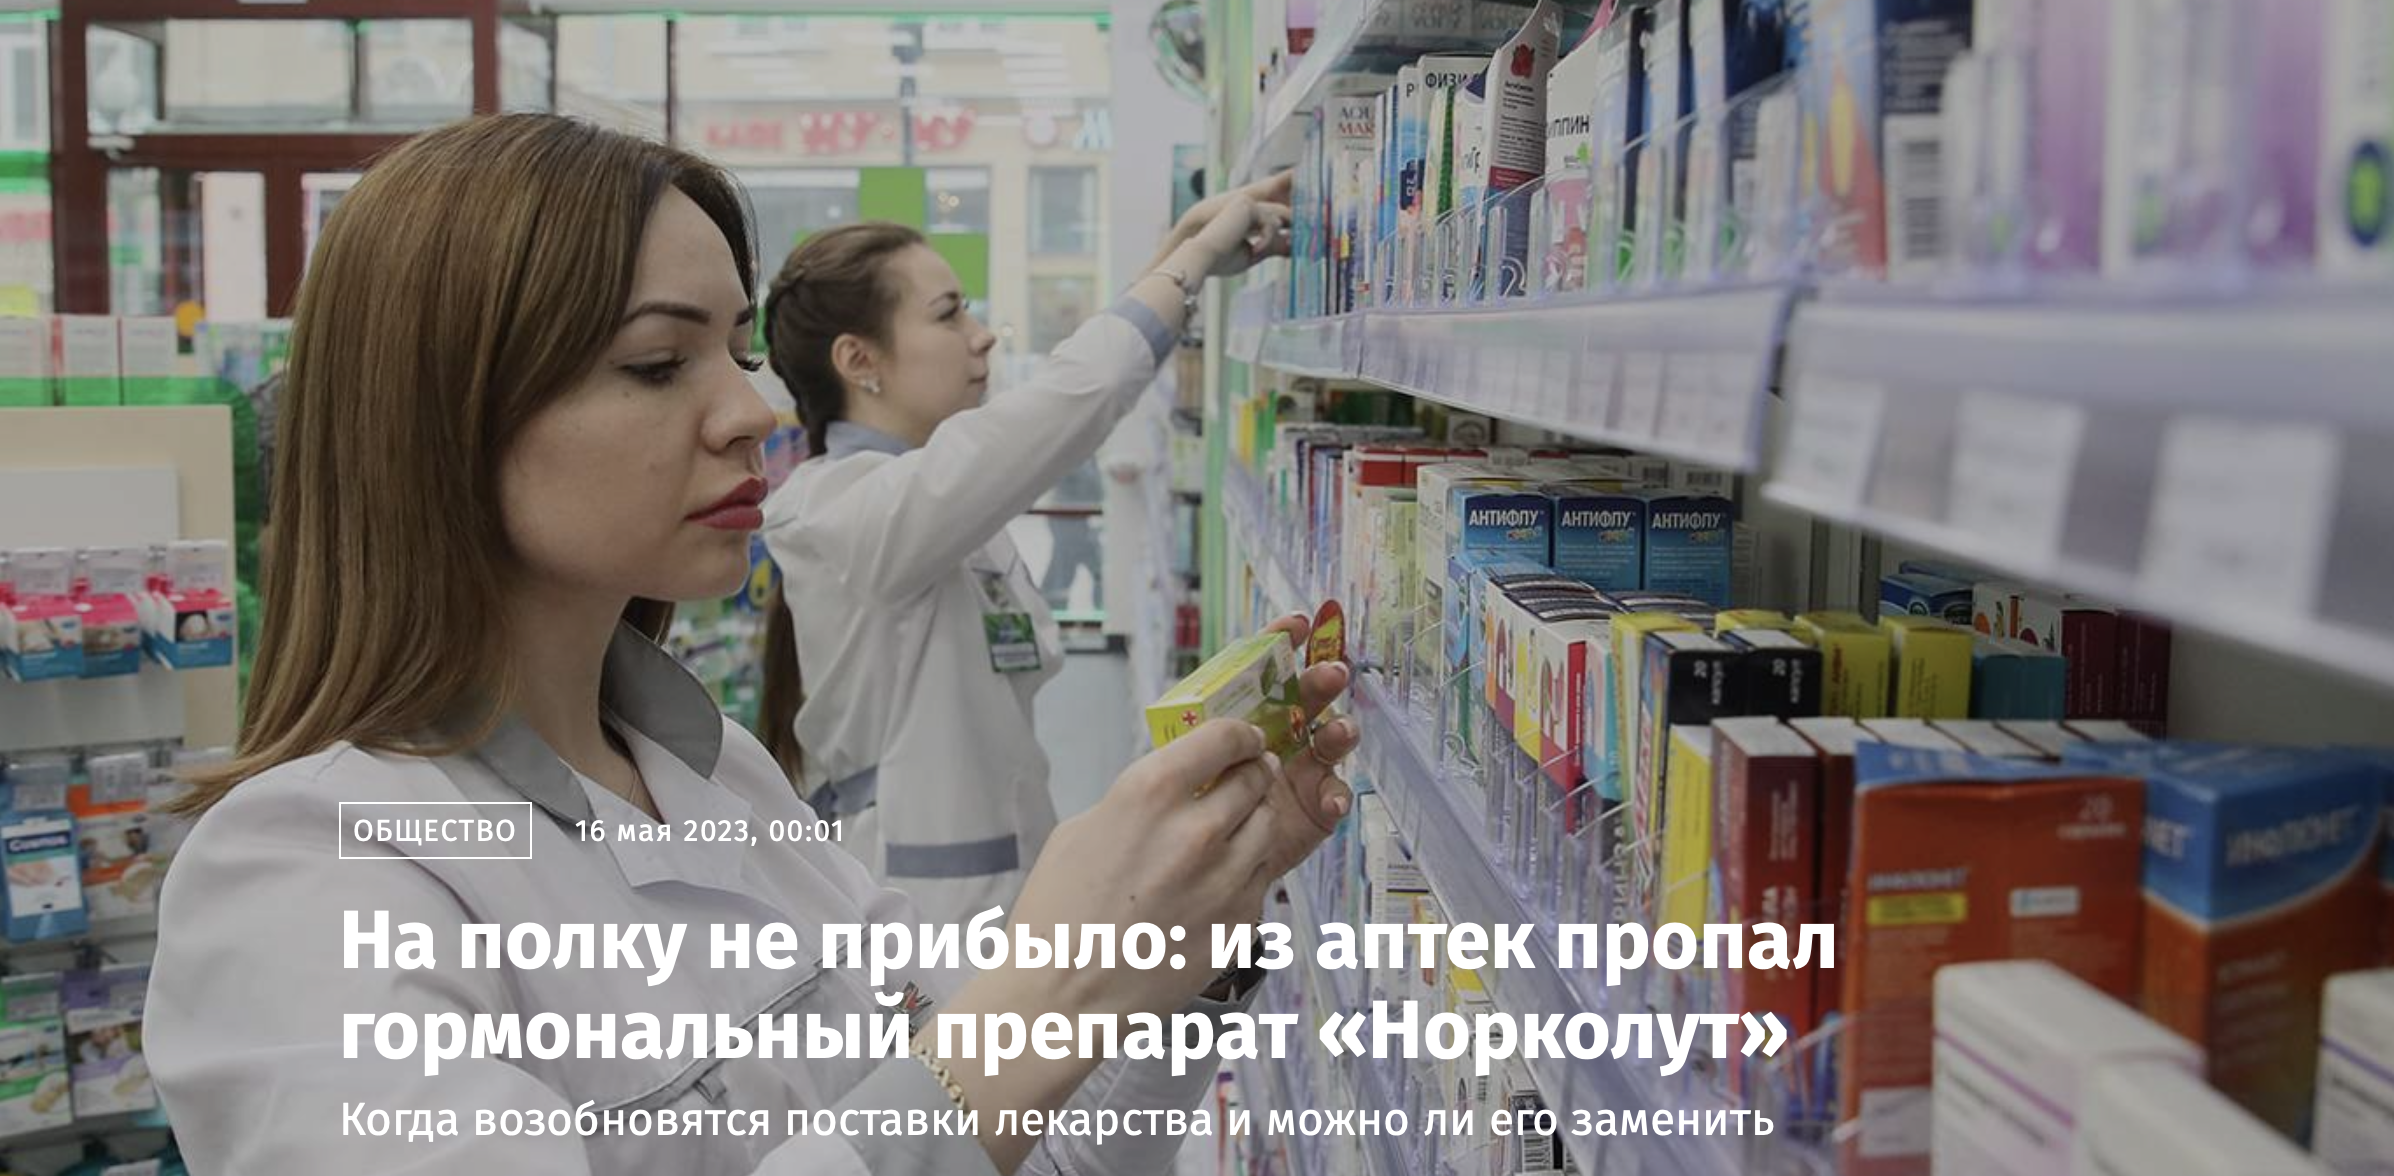 В российских аптеках дефицит препарата «Норколут»